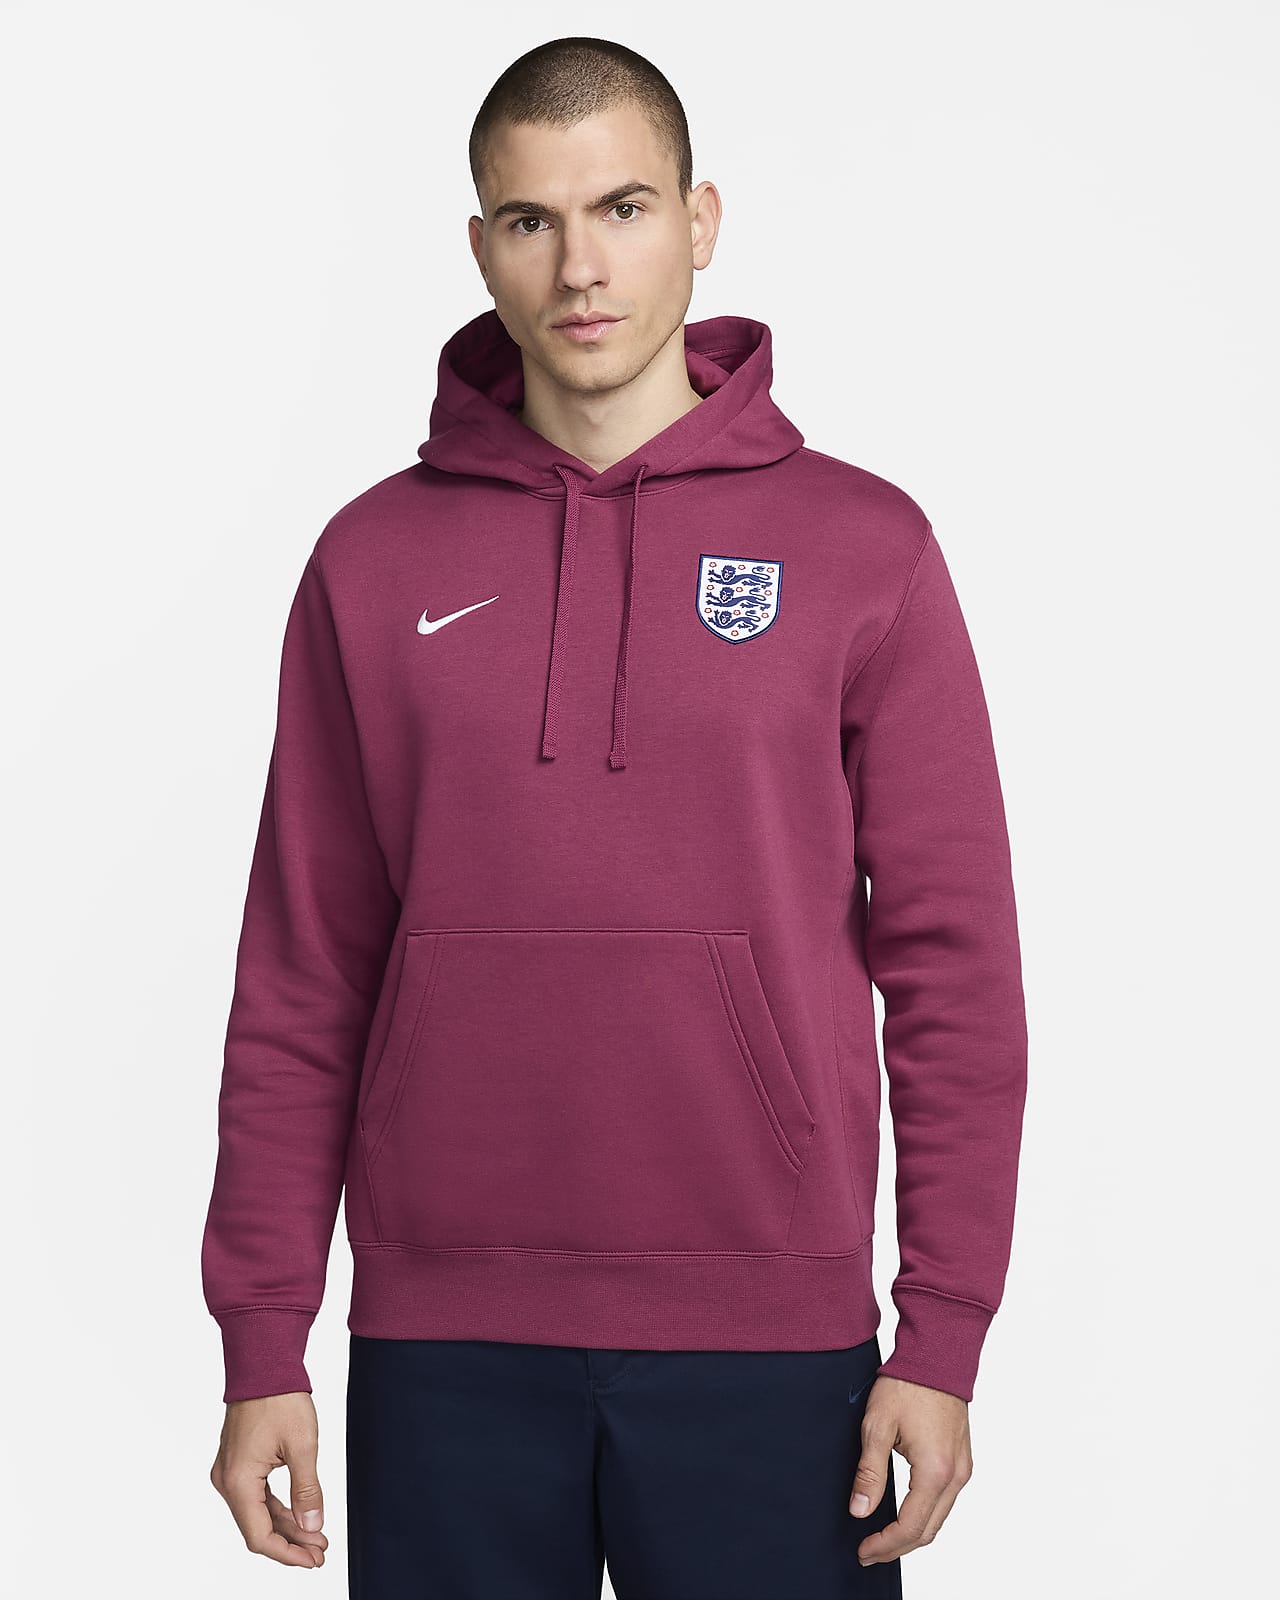 Engeland Club Nike voetbalhoodie voor heren